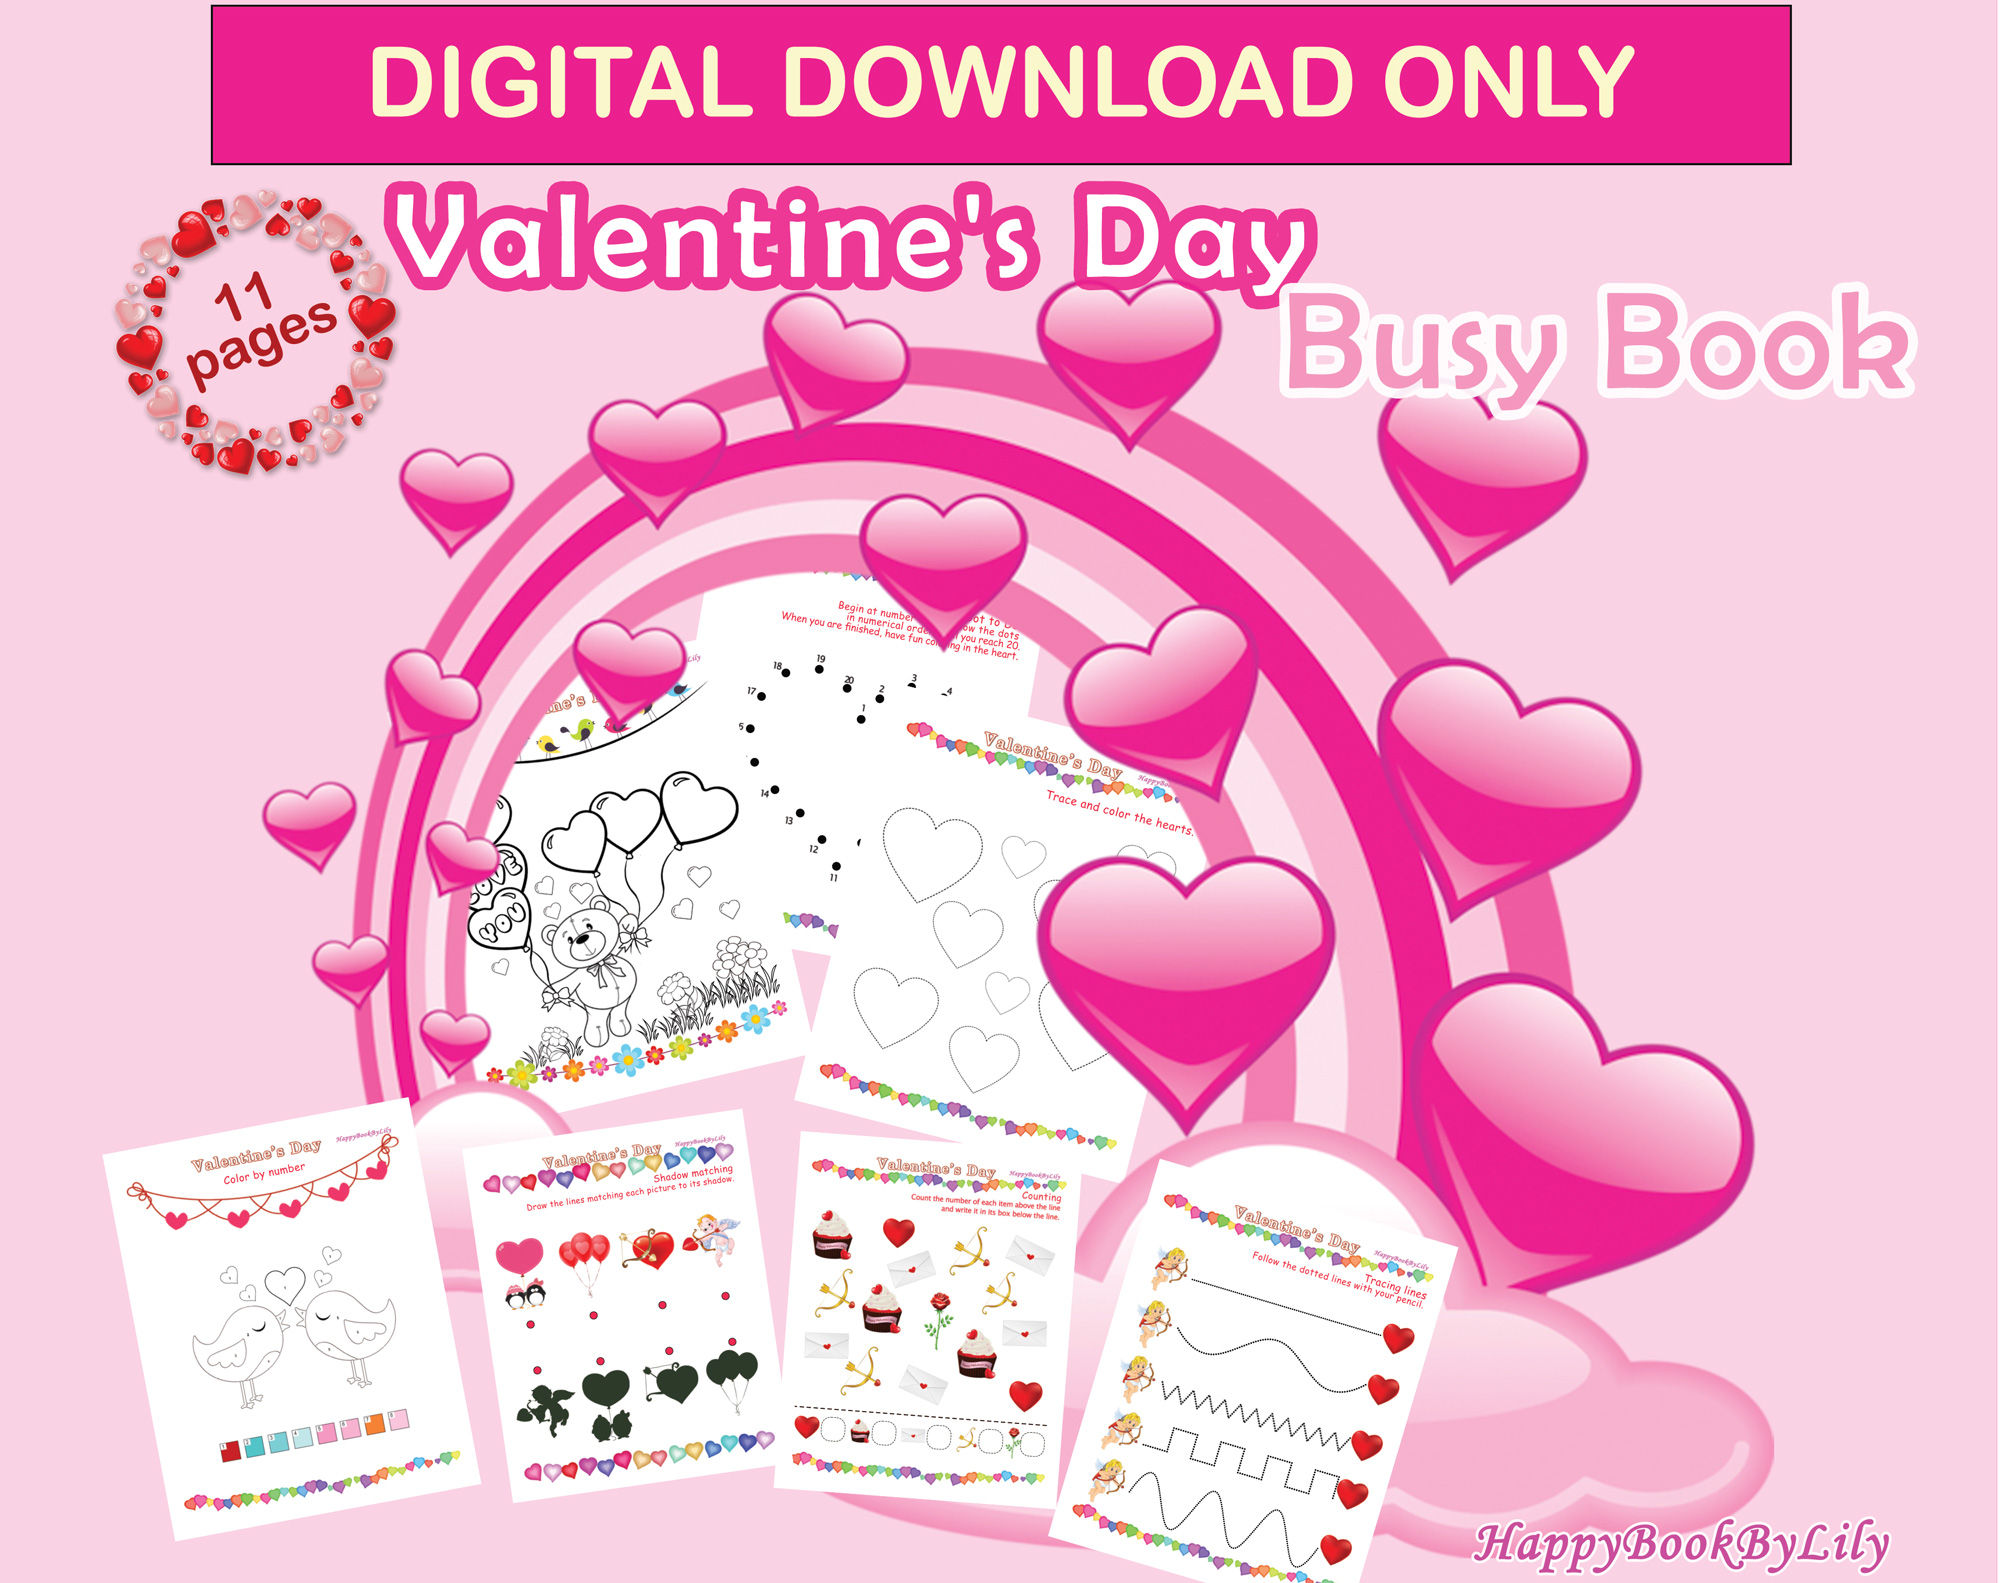 ValentinesDayFrontPage Etsy